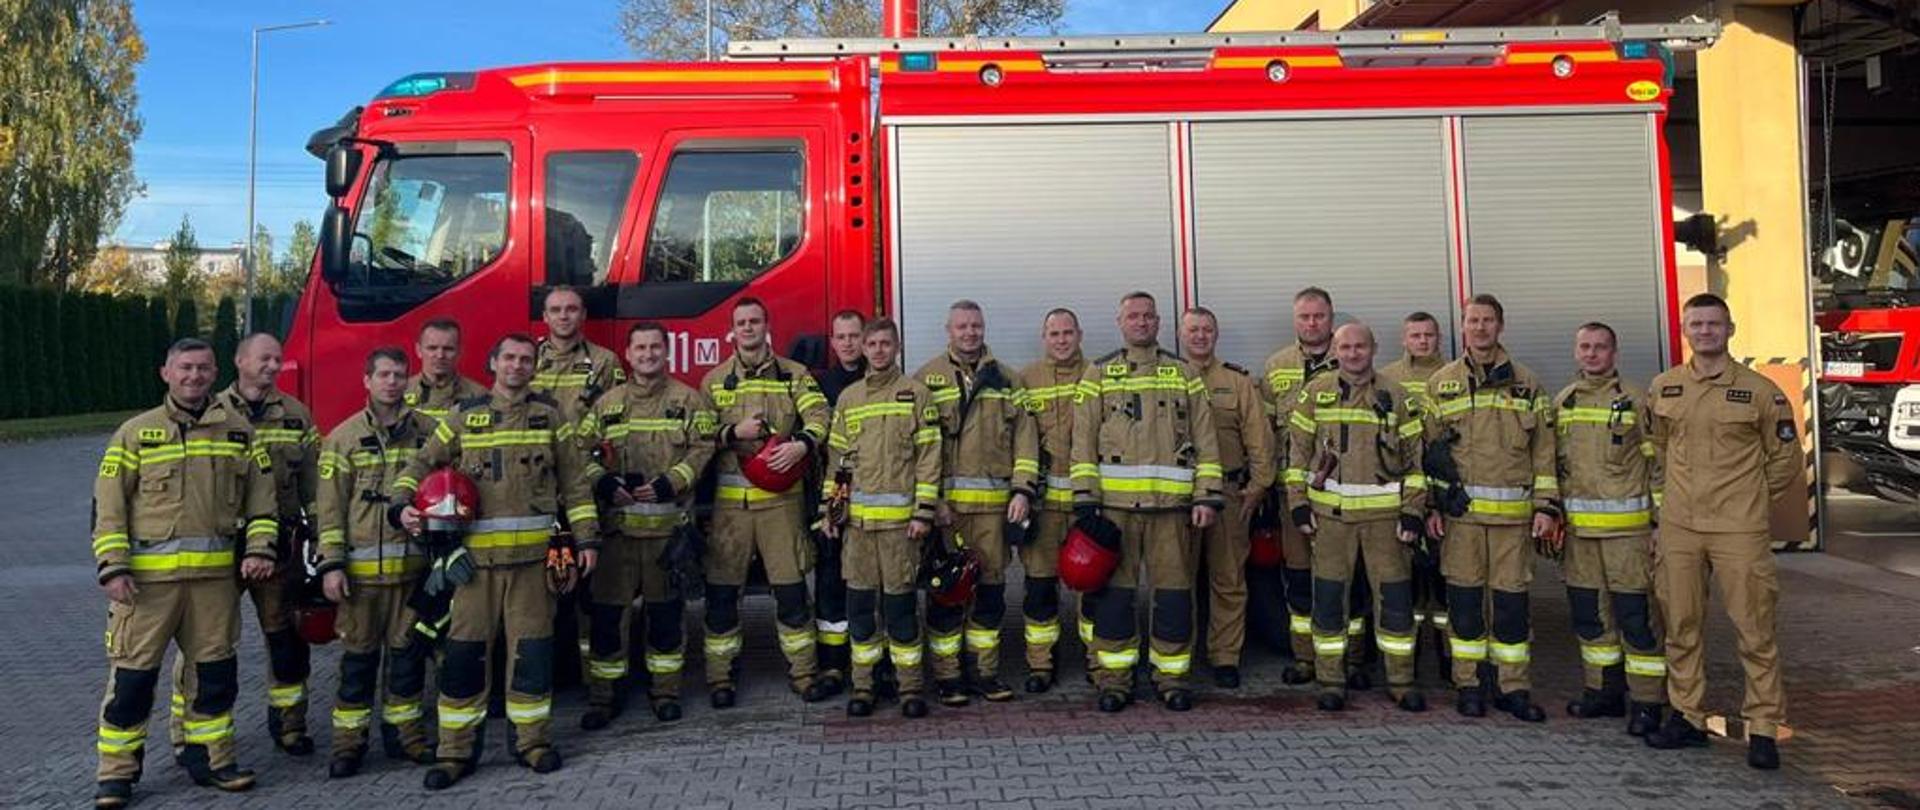 Wspólne zdjęcie strażaków żegnających st. ogn. Marcina Lechowskiego przechodzącego na zaopatrzenie emerytalne na tle samochodu pożarniczego. Strażacy stoją ubrani w ubrania specjalne, 